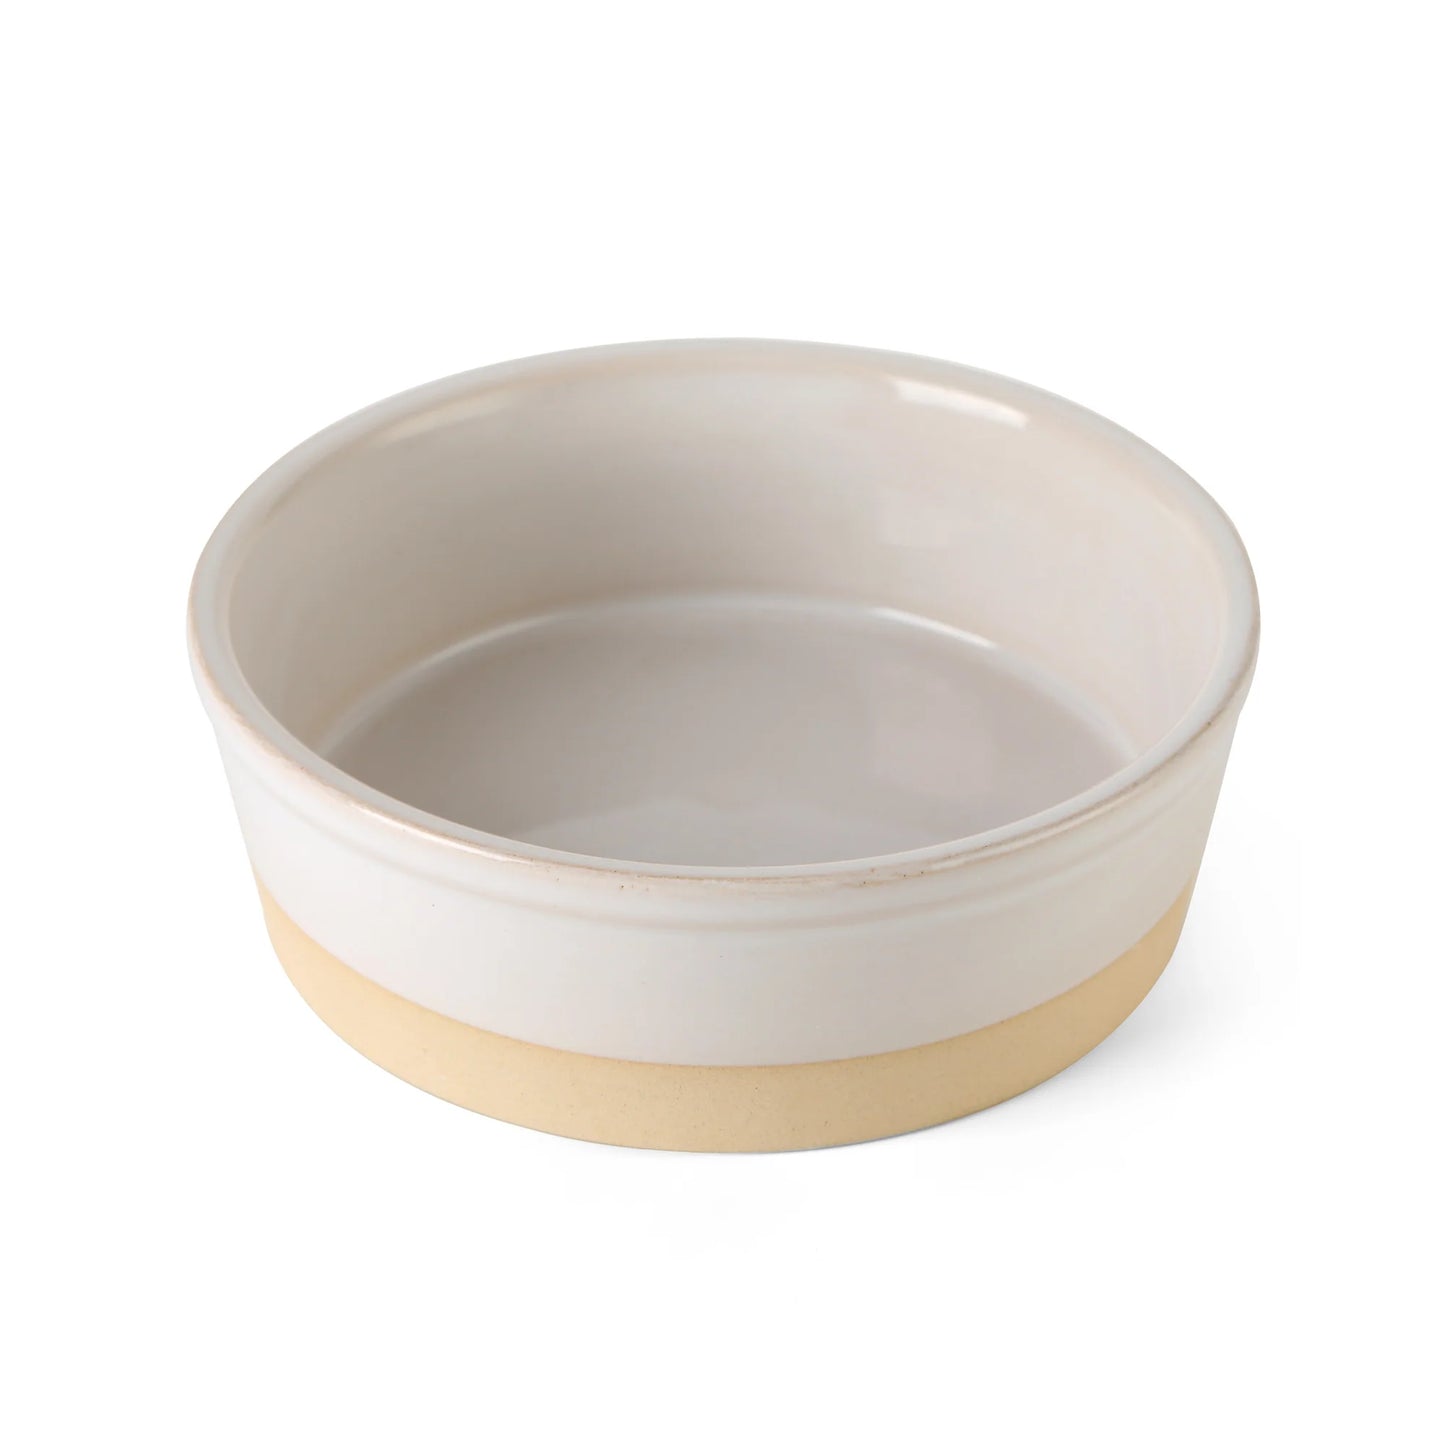 Park Life Designs - Nordic Cream Pet Bowl